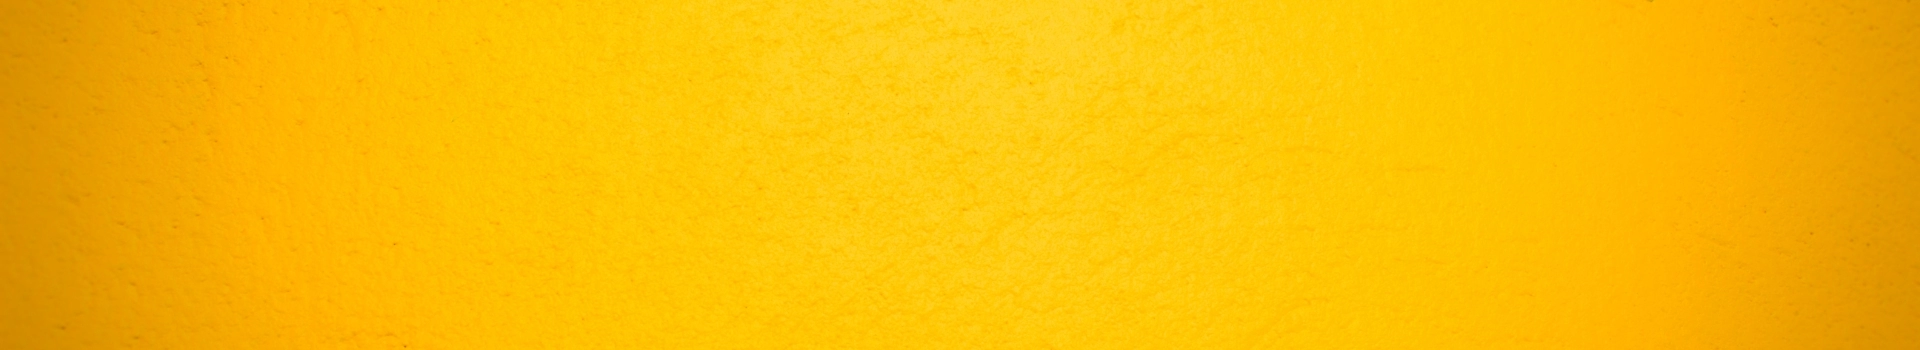 żółty banner